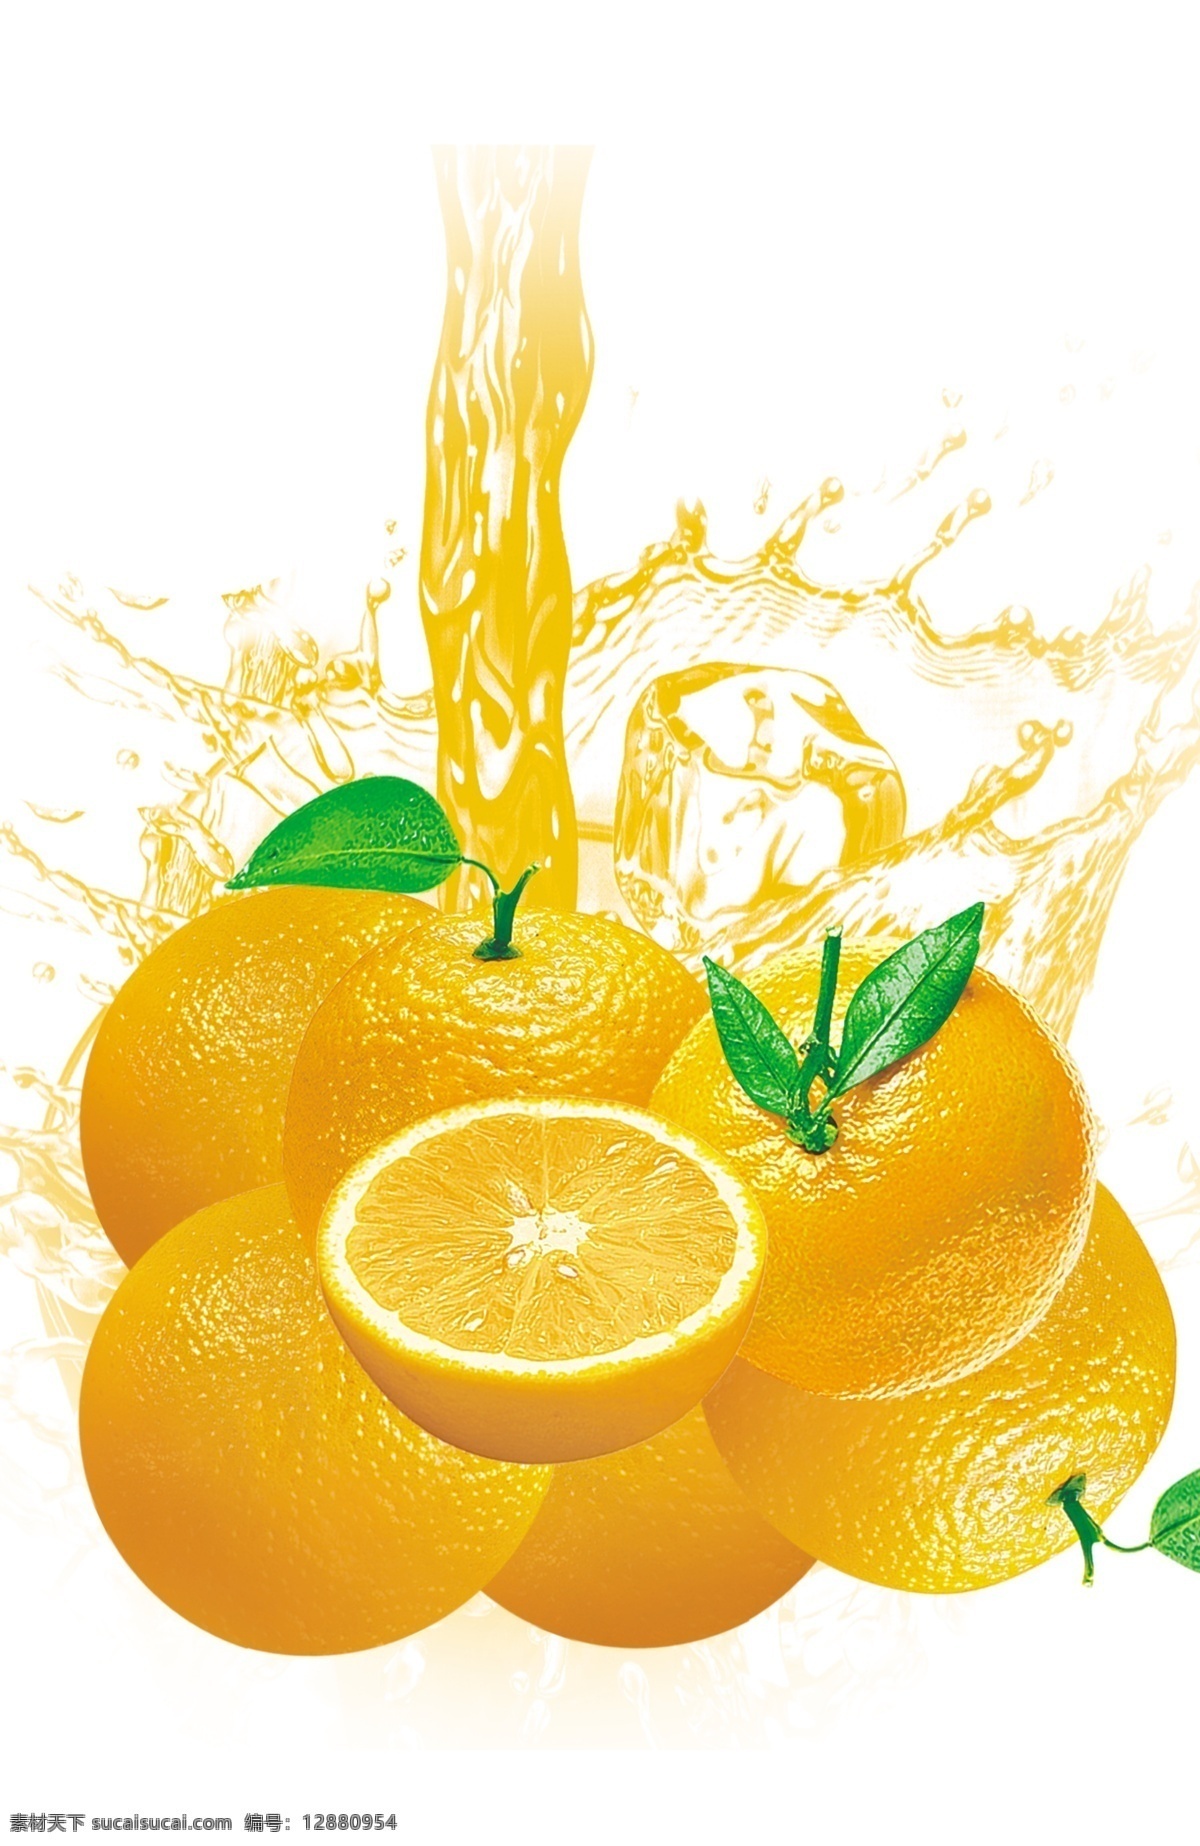 香橙图片 香橙 水果 实物 食物 橘桔橙 分层